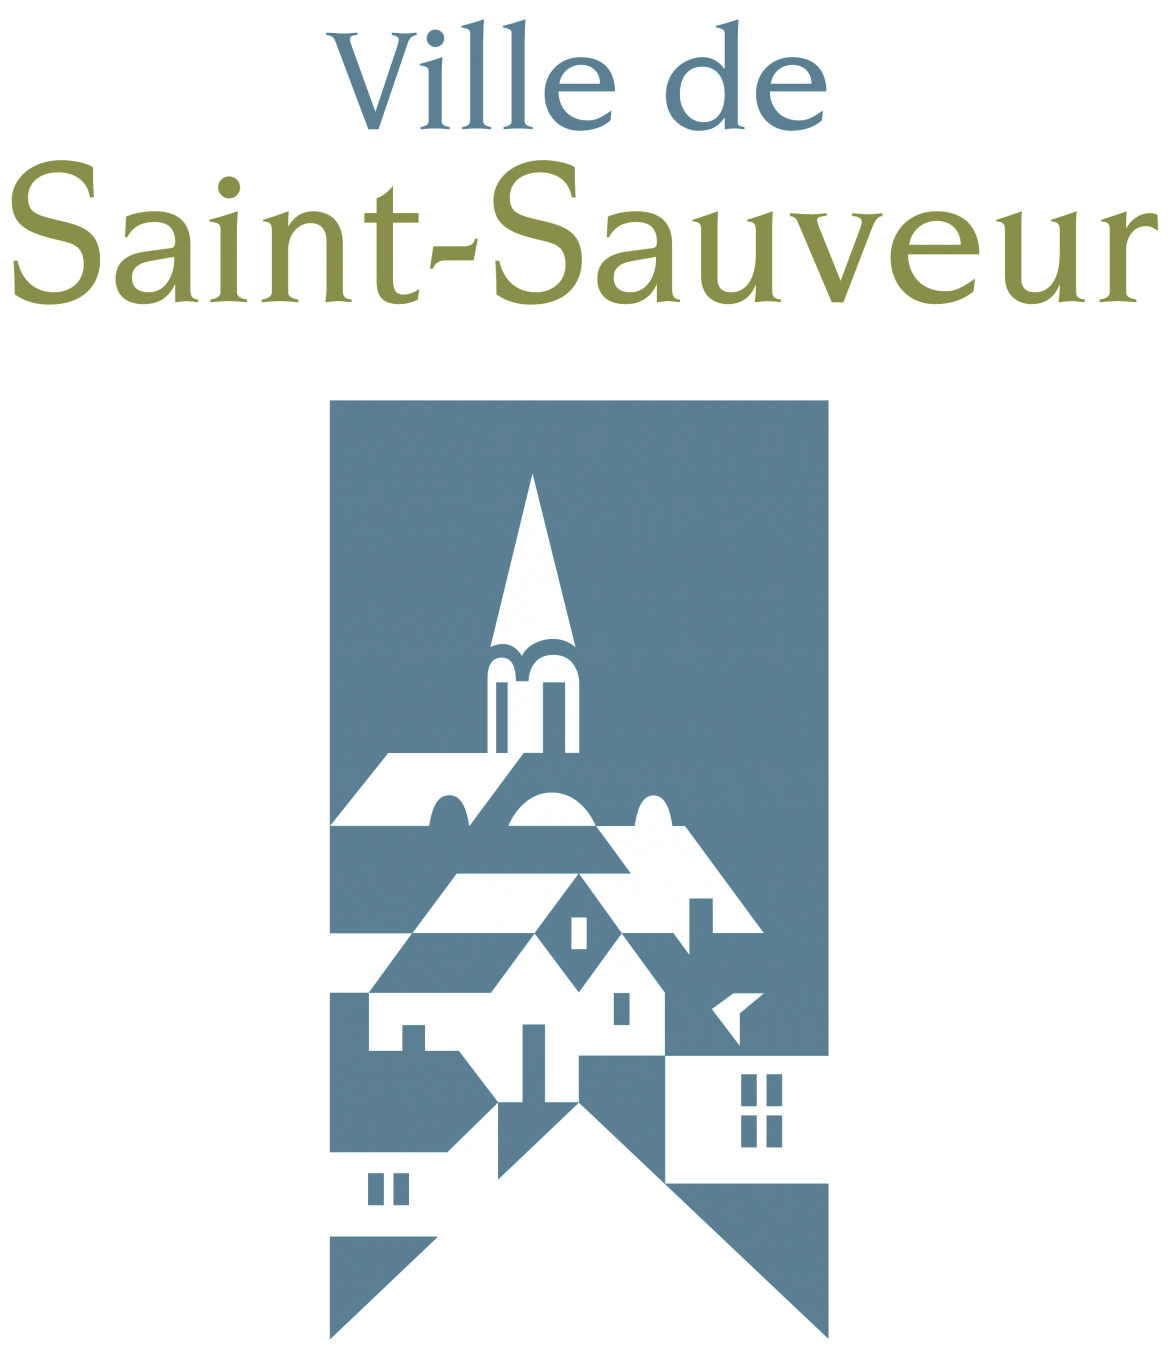 Ville-de-Saint-Sauveur-2015_Pantone-2.png